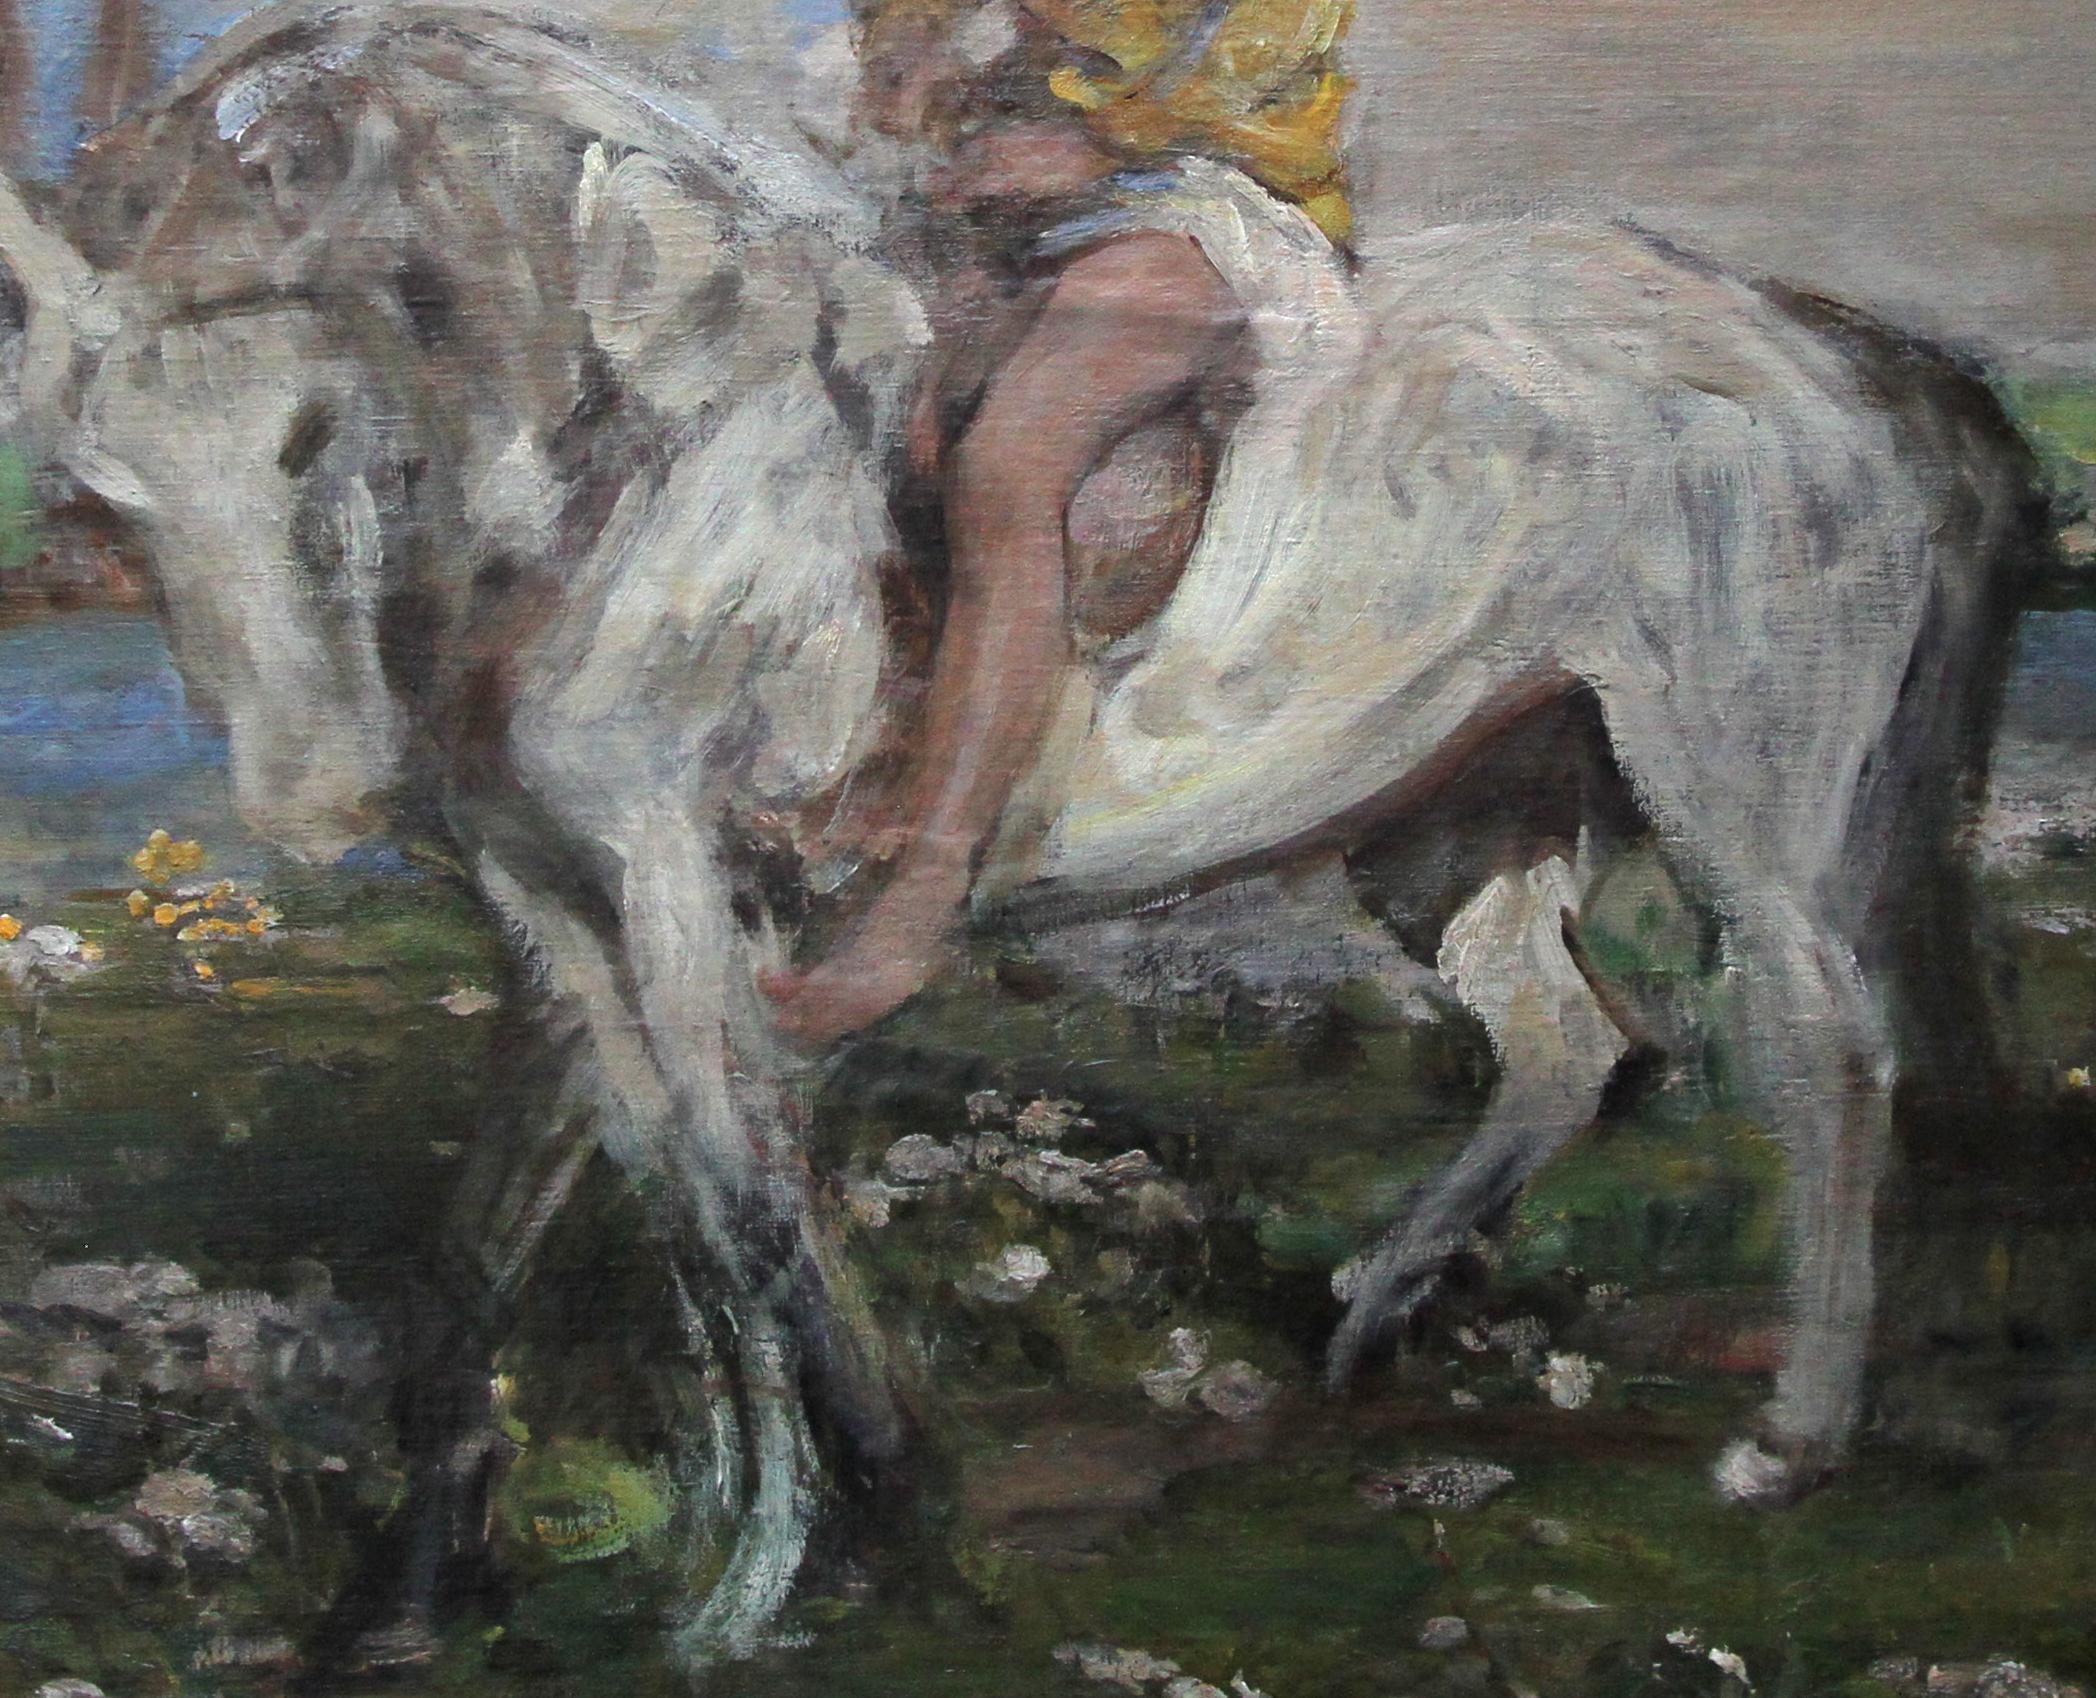 Ein großes Originalöl auf Leinwand/Panel von Sir James Jebusa Shannon. Das Porträt stammt aus der Edwardianischen Zeit und zeigt ein kühnes Gemälde des britischen Impressionismus, das seinen Enkel Jeb Keigwin auf einem Pony zeigt. Untergebracht in